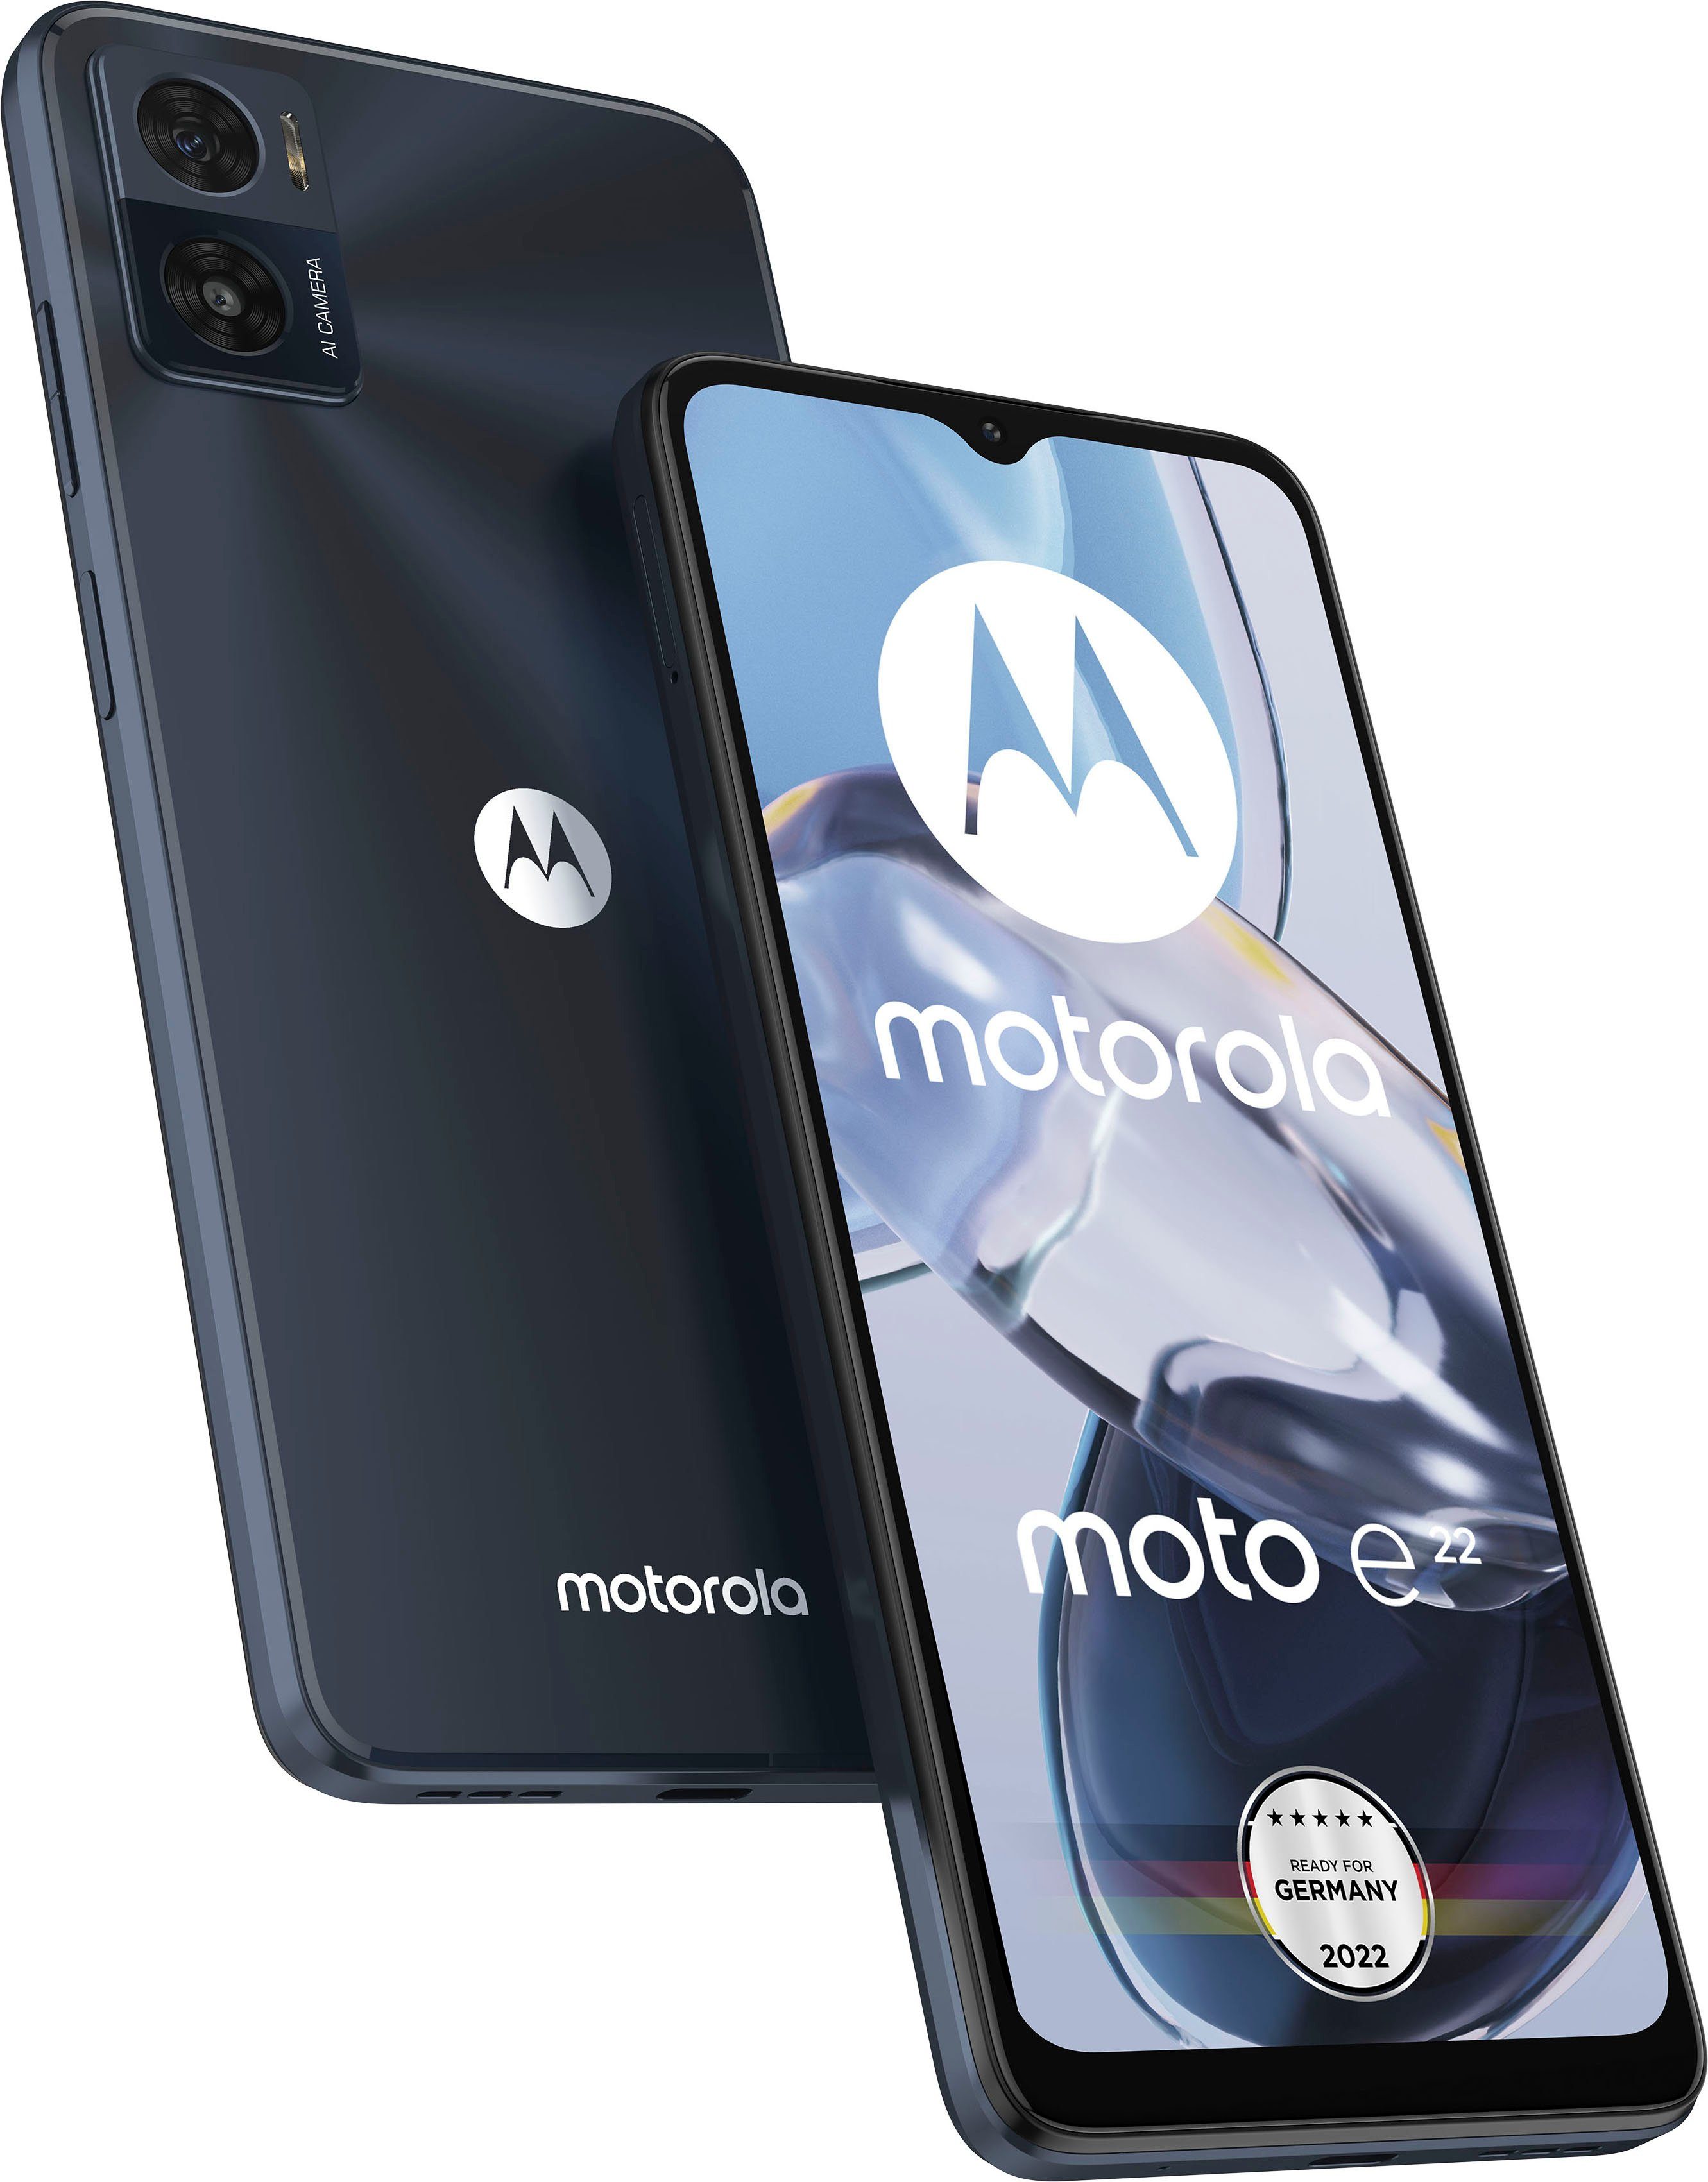 Motorola Mobiltelefone kaufen » Motorola Tastenhandys OTTO 